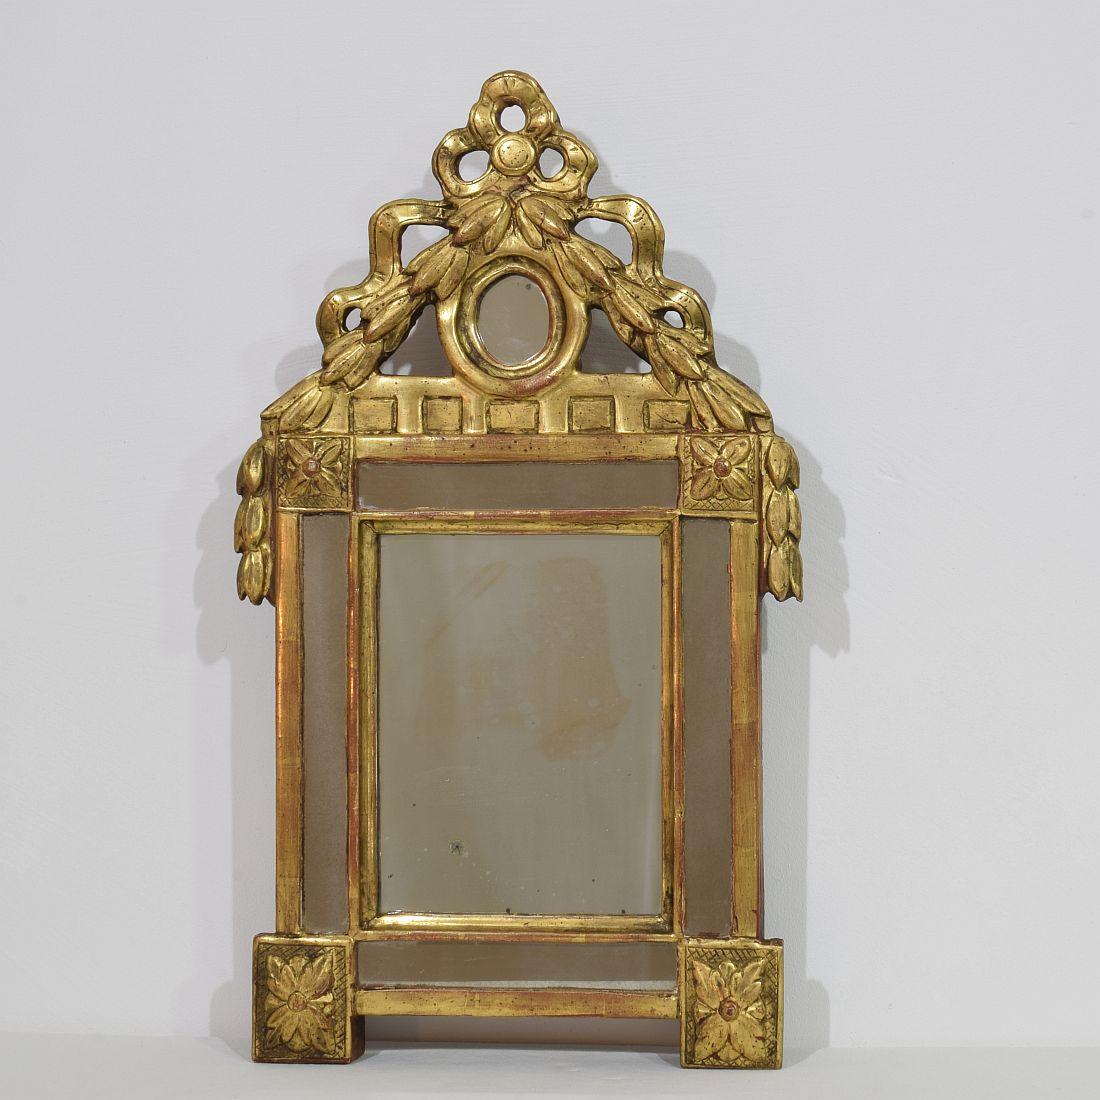 Kleiner vergoldeter Spiegel im Louis-XVI-Stil mit seinem ursprünglichen Spiegelglas
Frankreich, um 1760-1850
Verwittert, kleine Schäden und alte Reparaturen.